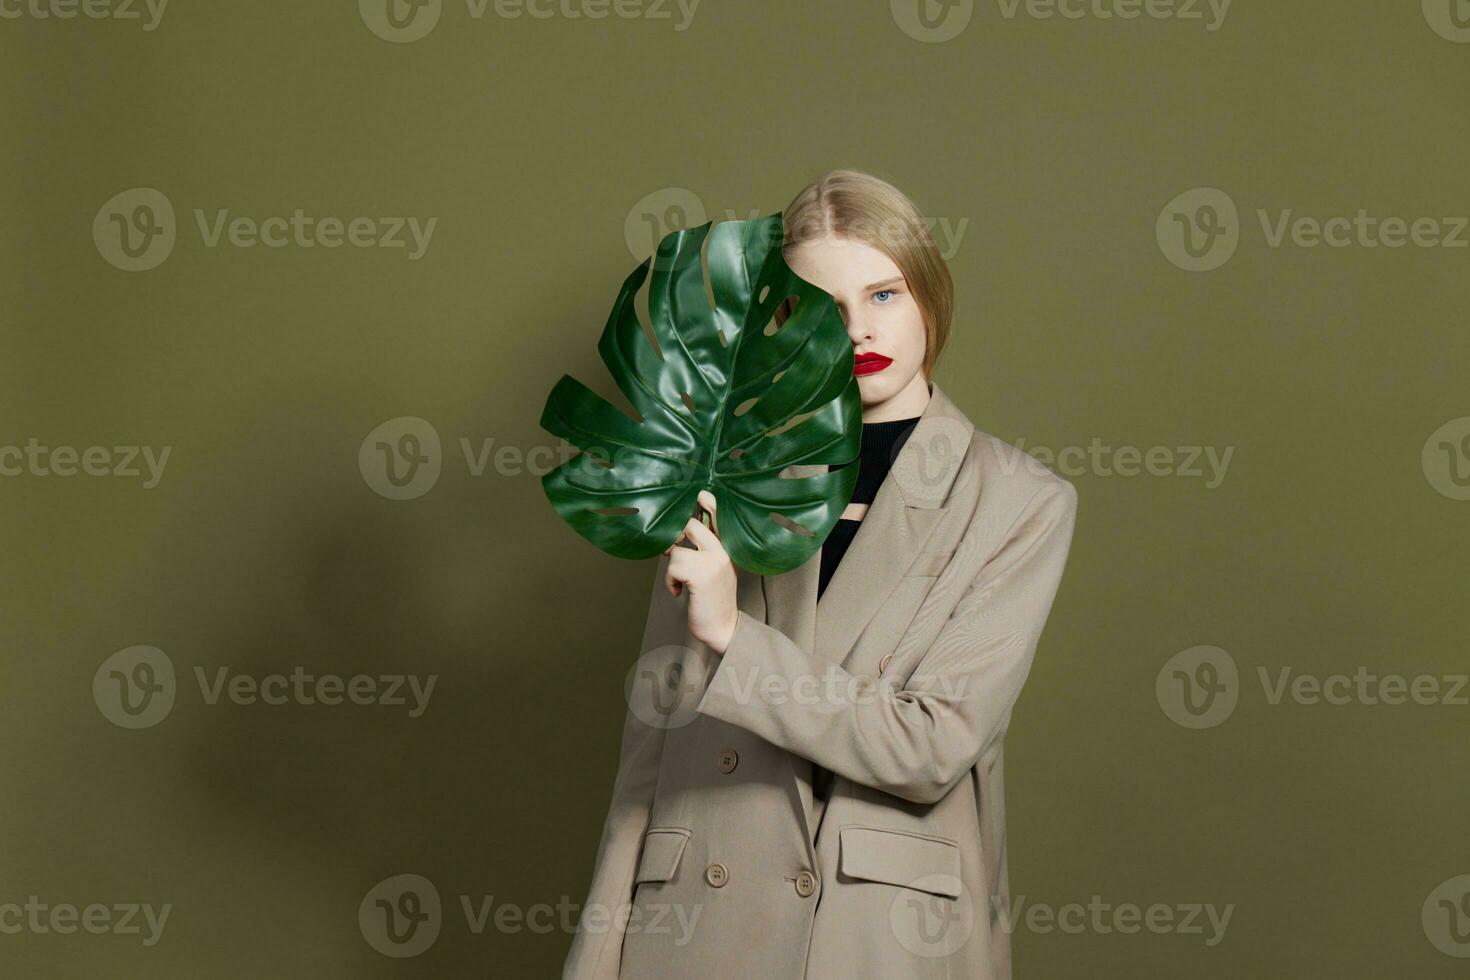 rubia mujer verde palma hoja Saco brillante maquillaje estudio modelo inalterado foto